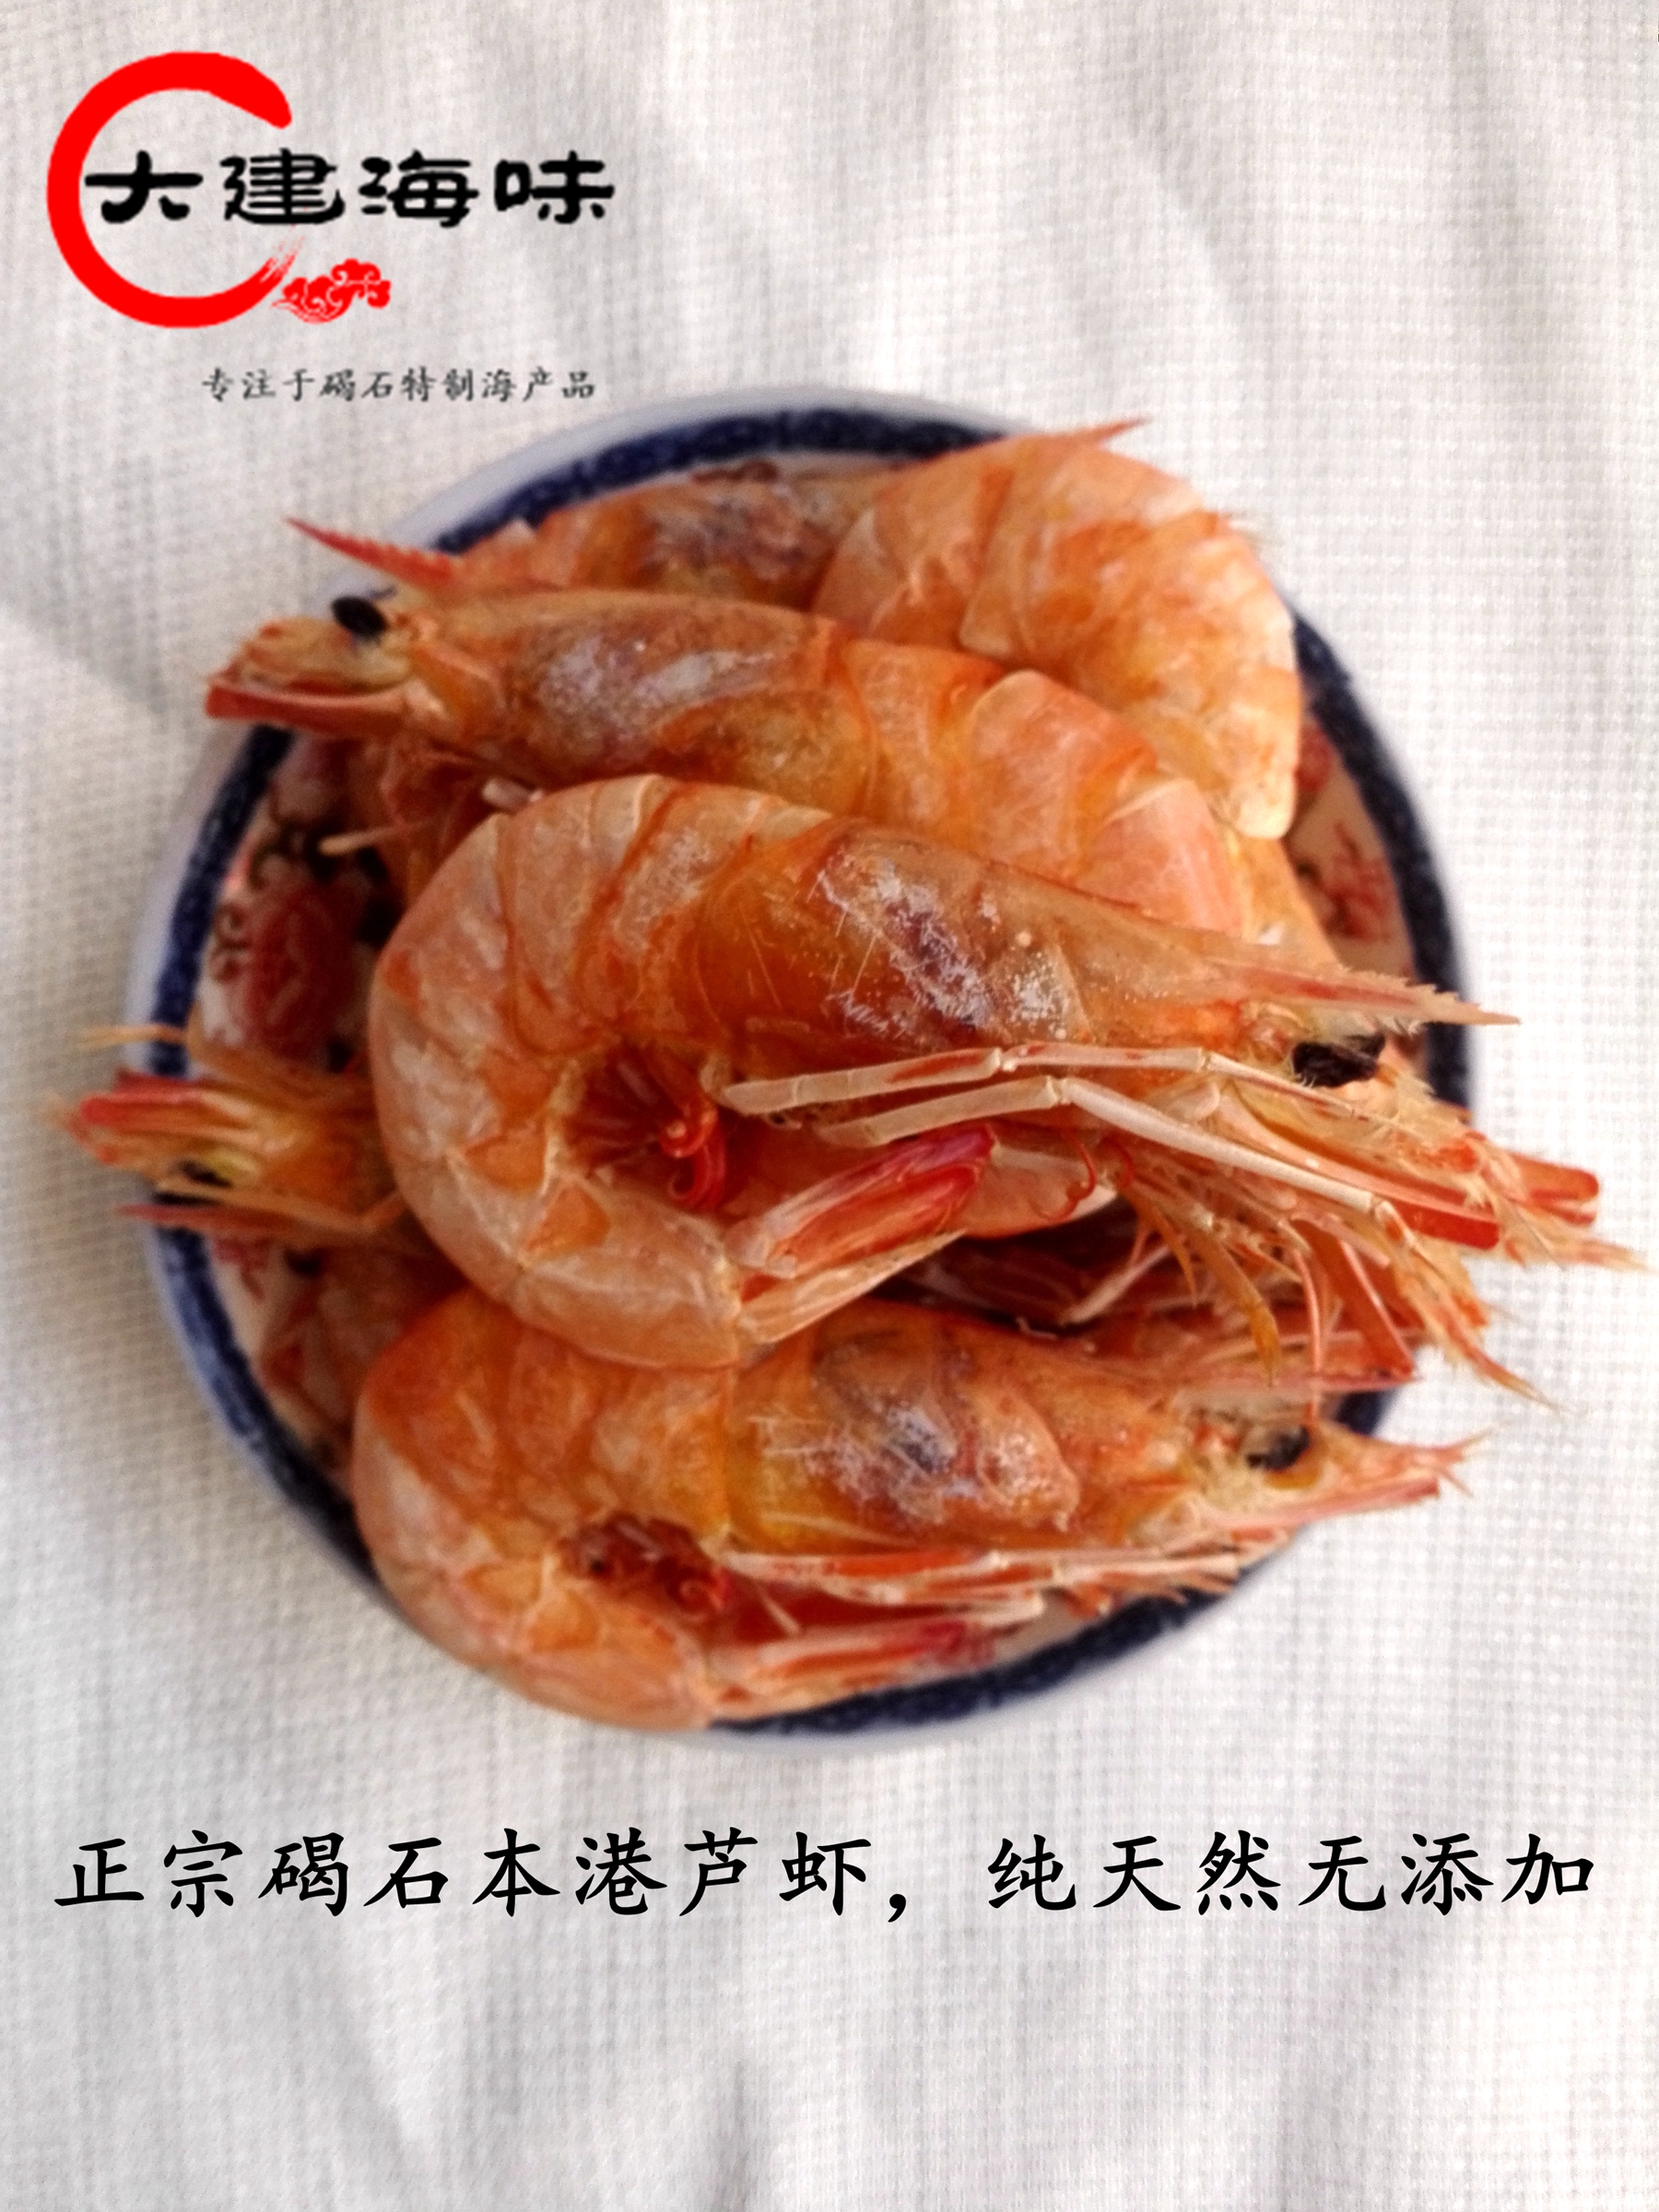 广东潮汕尾碣石特产大芦虾干500g即食对虾海虾干海鲜干货水产海味